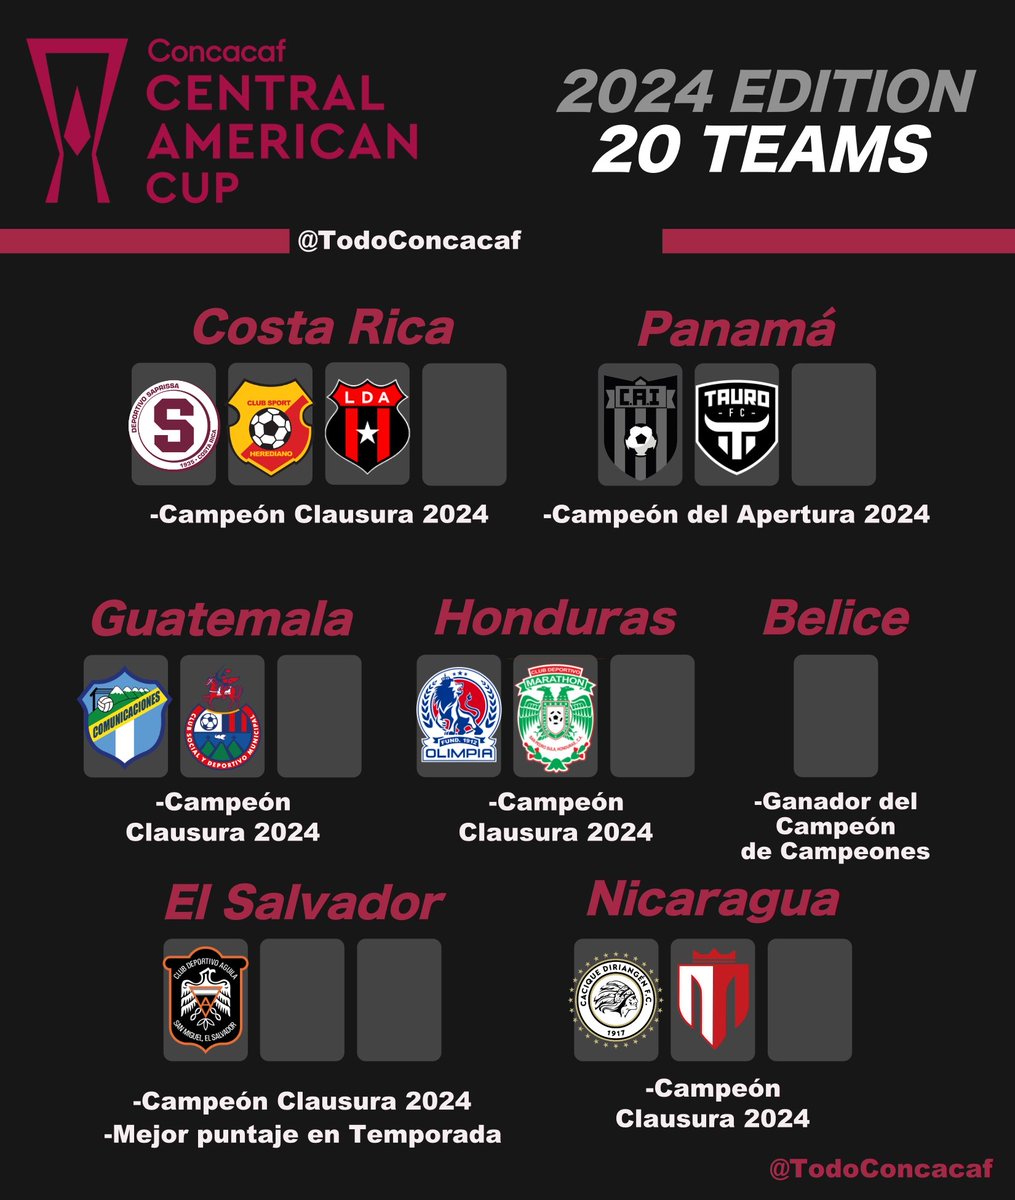 #CONCACAF 

Equipos clasificados hasta el momento en la #CopaCentroamericana ⚽️🏆

Créditos: @TodoConcacaf